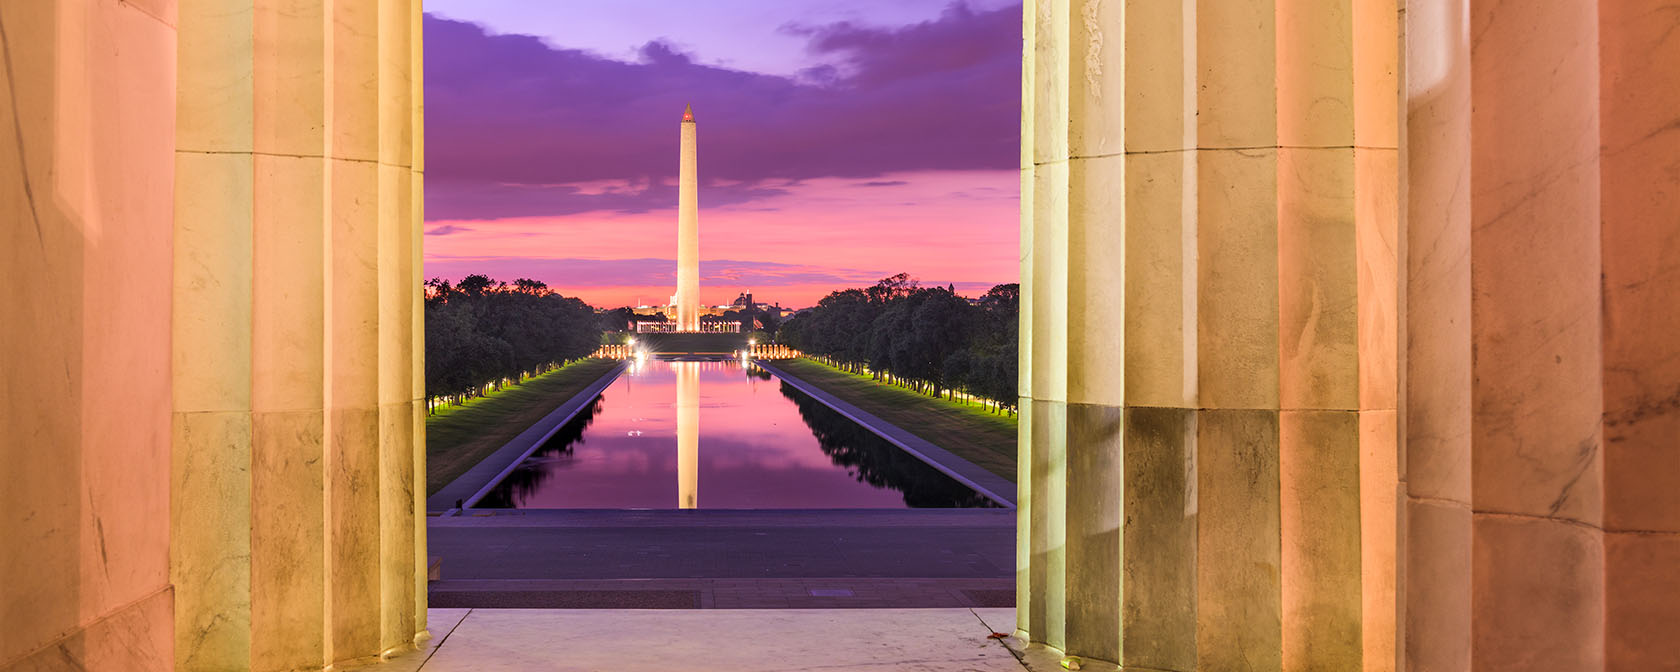 vista do Monumento de Washington e da piscina refletora do Lincoln Memorial com lindas cores do pôr do sol